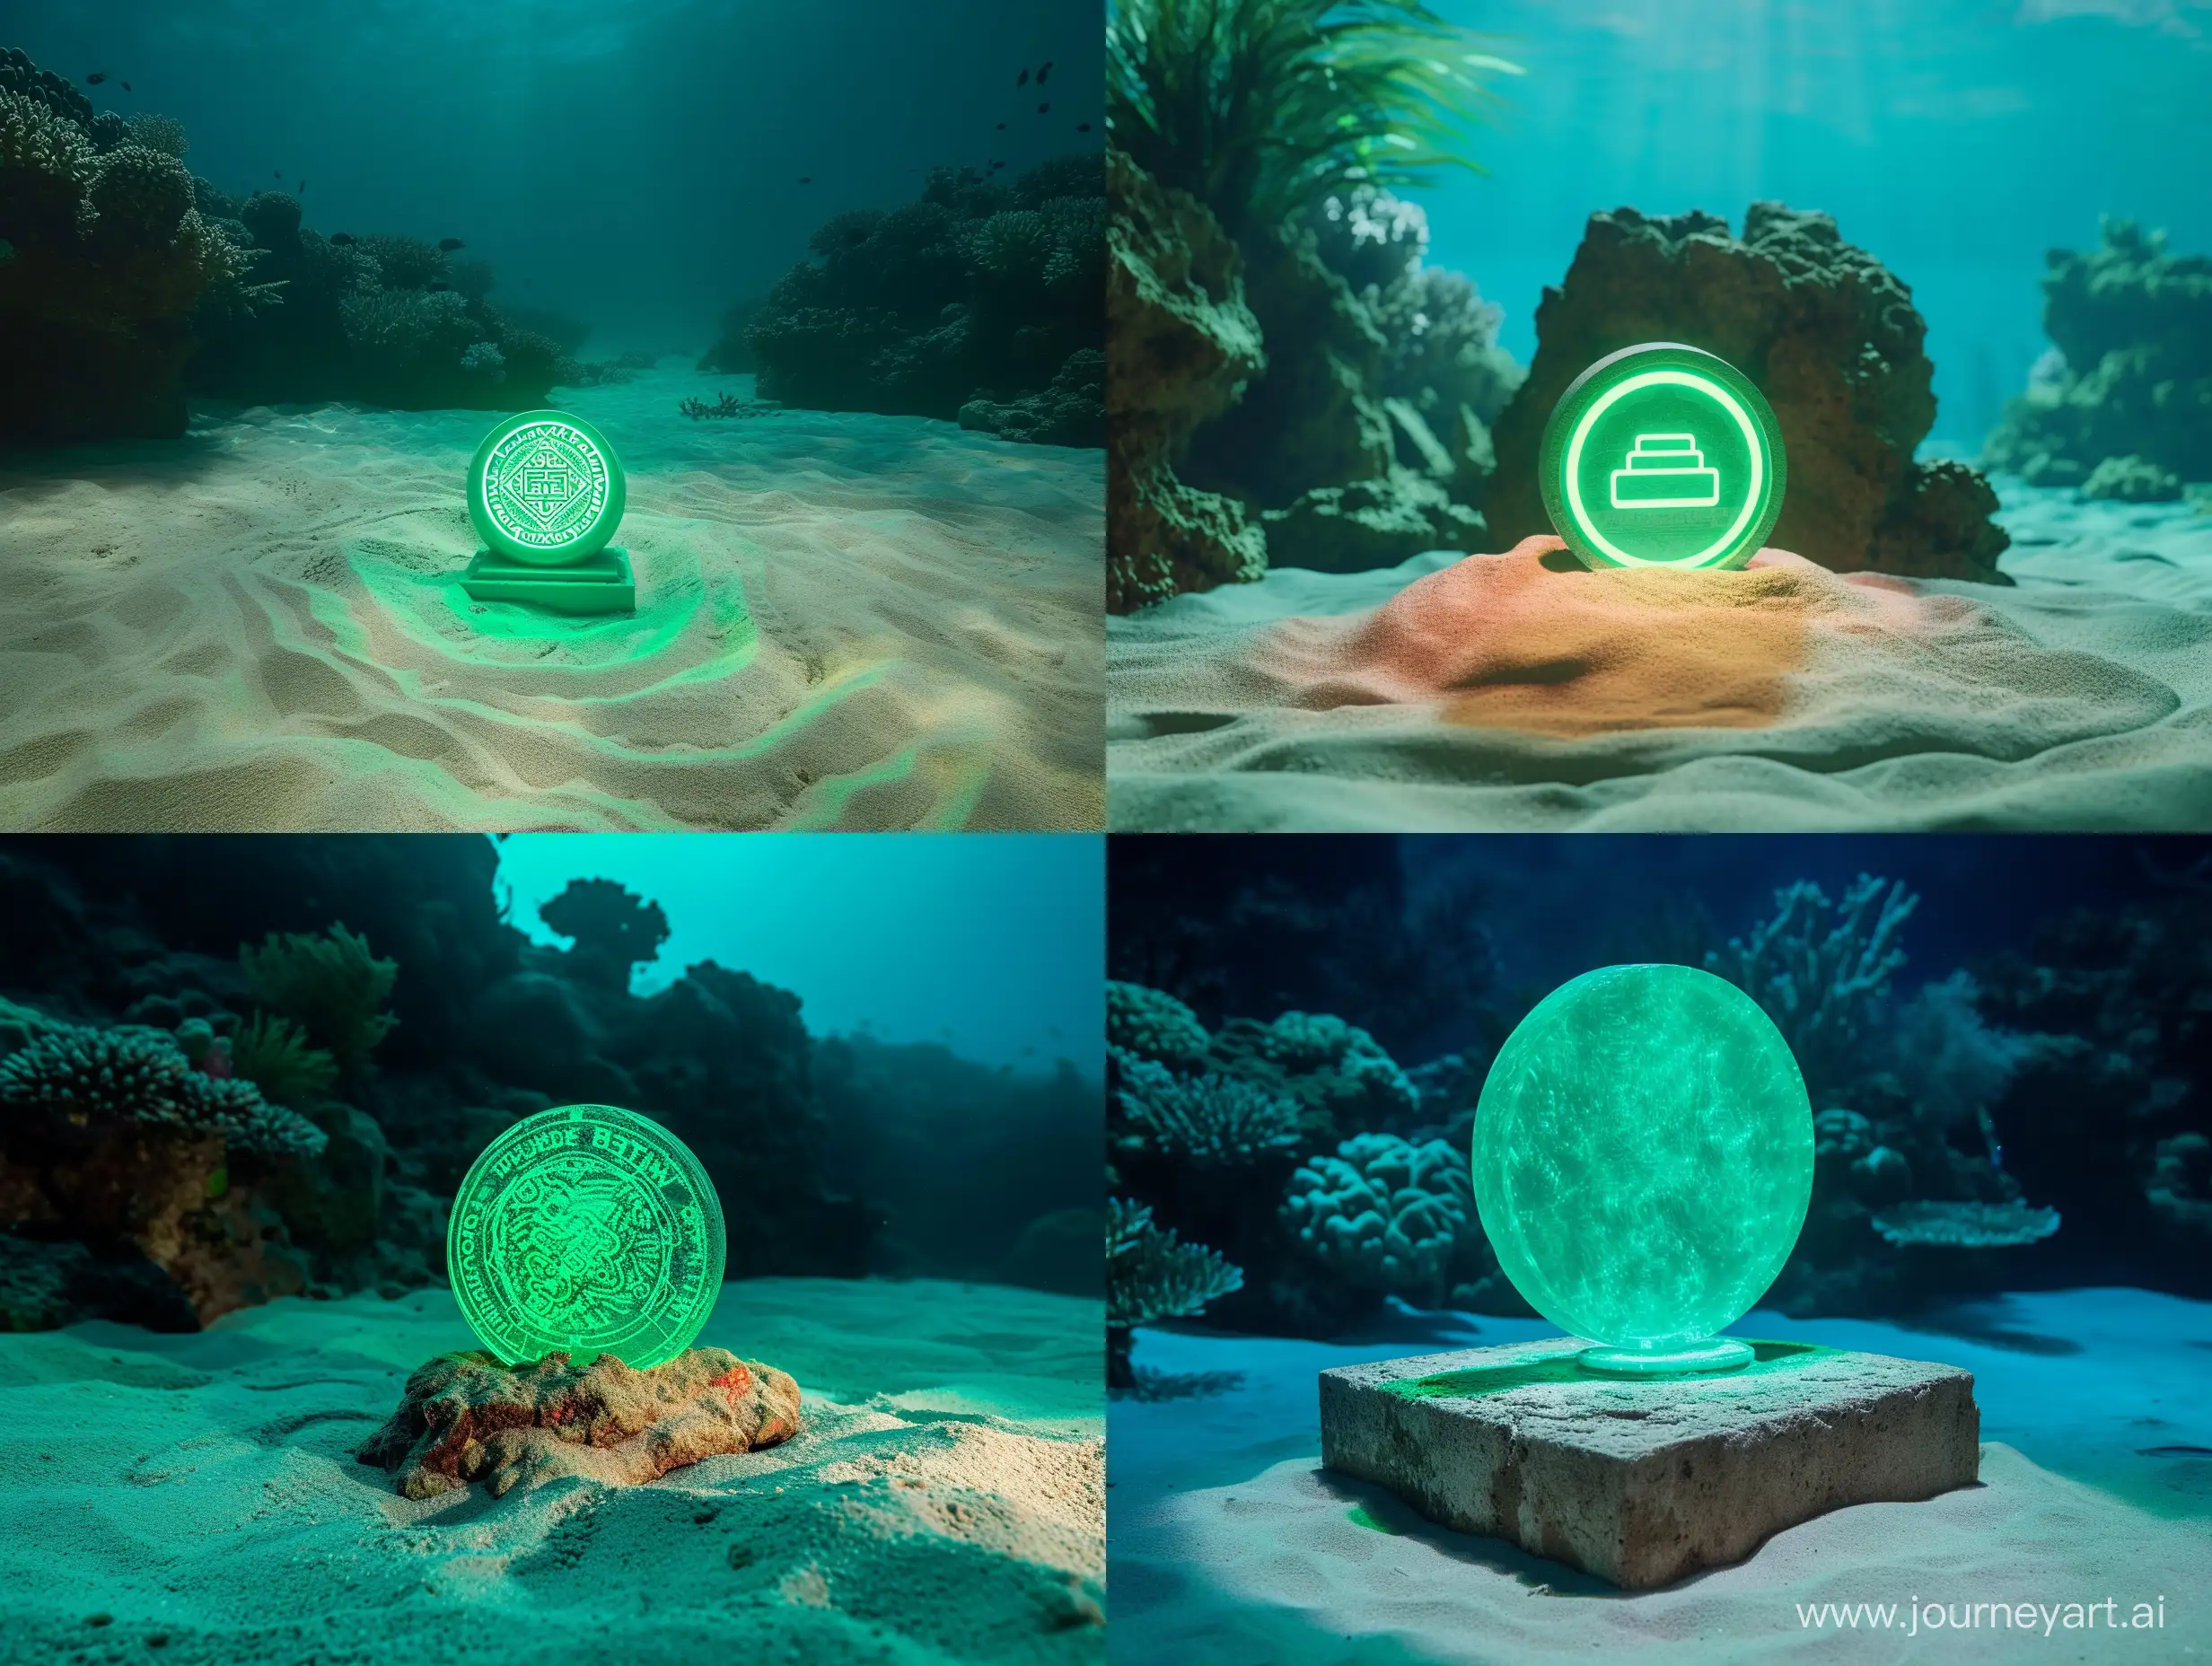 светящийся круглый логотип зеленого цвета, монумент под водой, на песке, коралловый риф на фоне